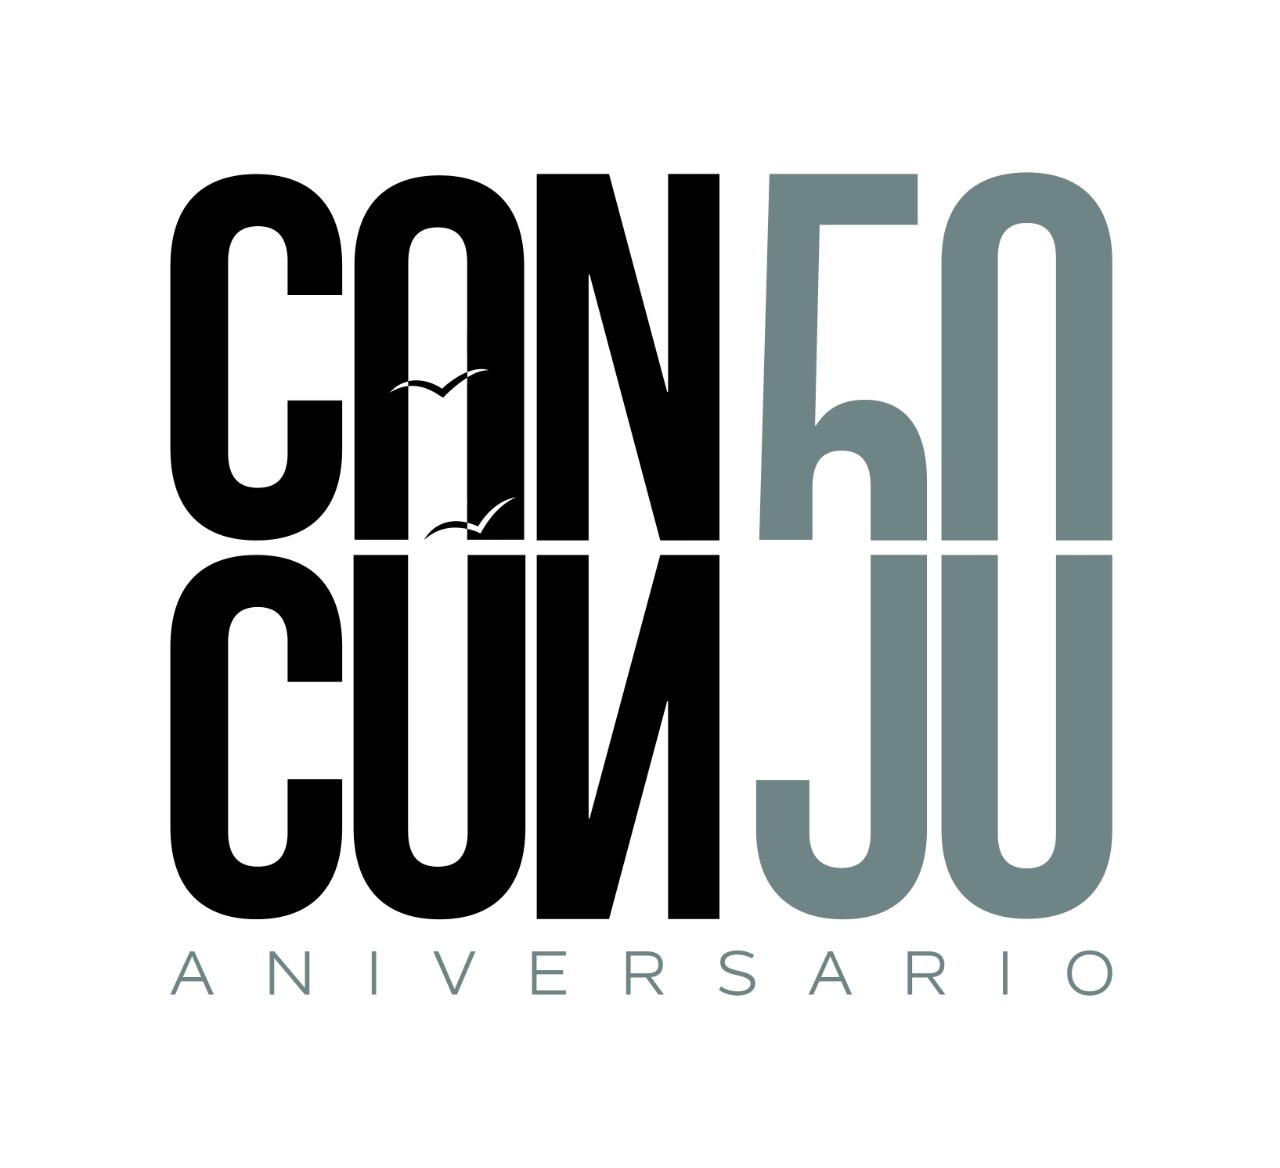 ¿Recuerdas Cansa Cunju?, esta es la historia del logo del 50 Aniversario de Cancún